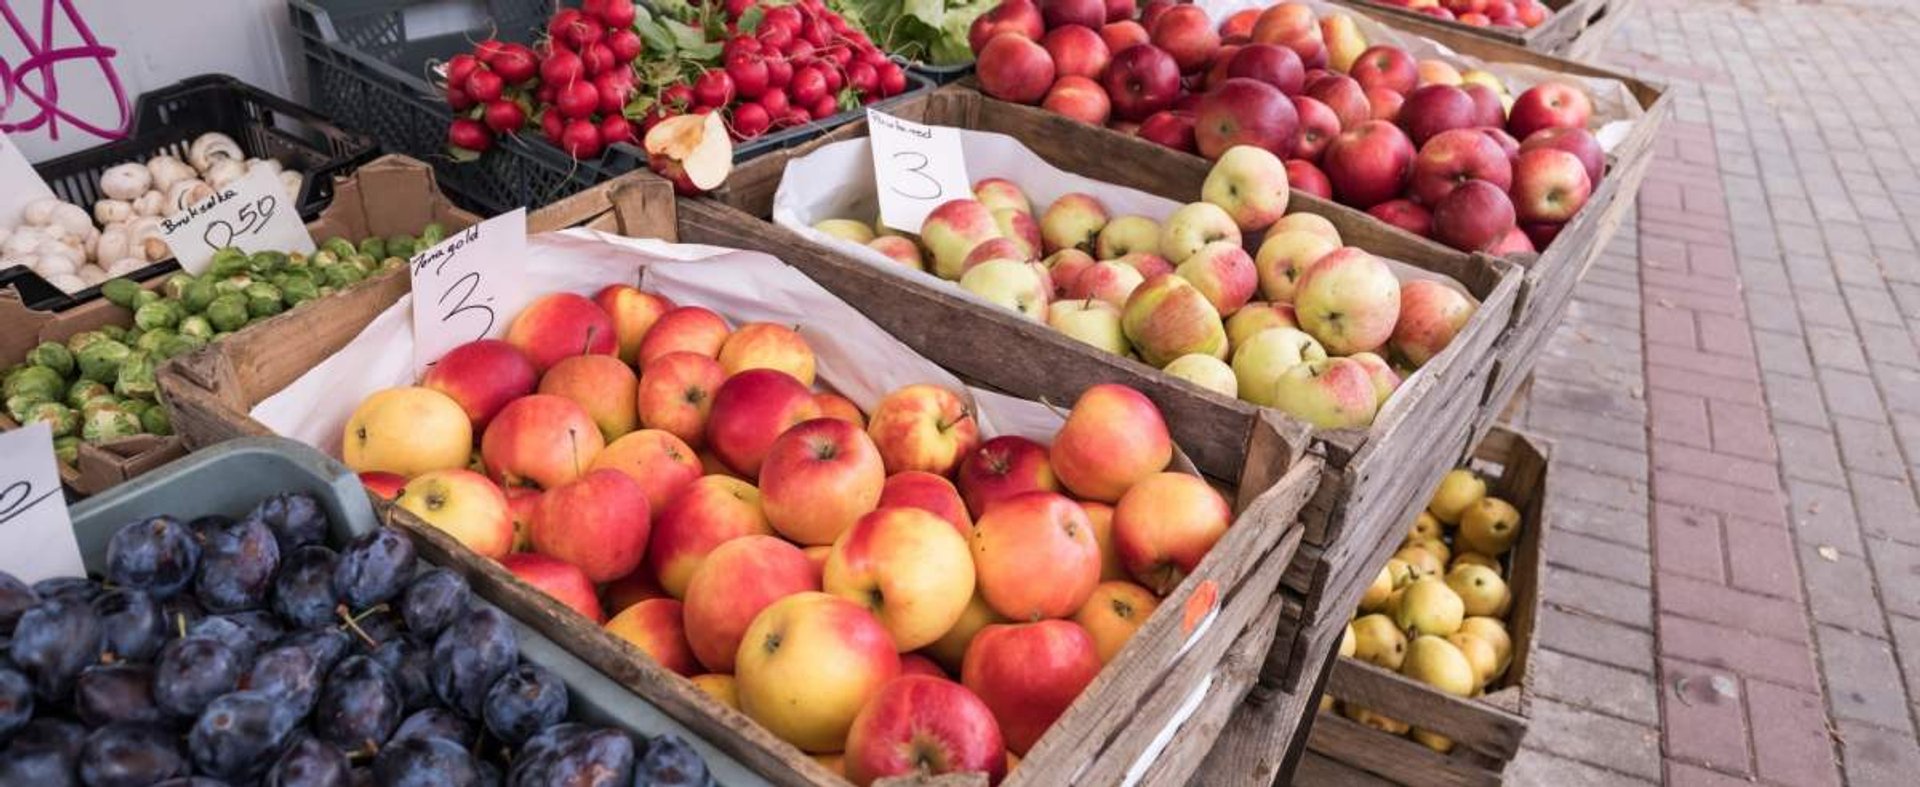 fot: Arkadiusz Ziolek/ East News. 28.11.2018. n/z Skrzynie z jablkami, owocami i warzywami.